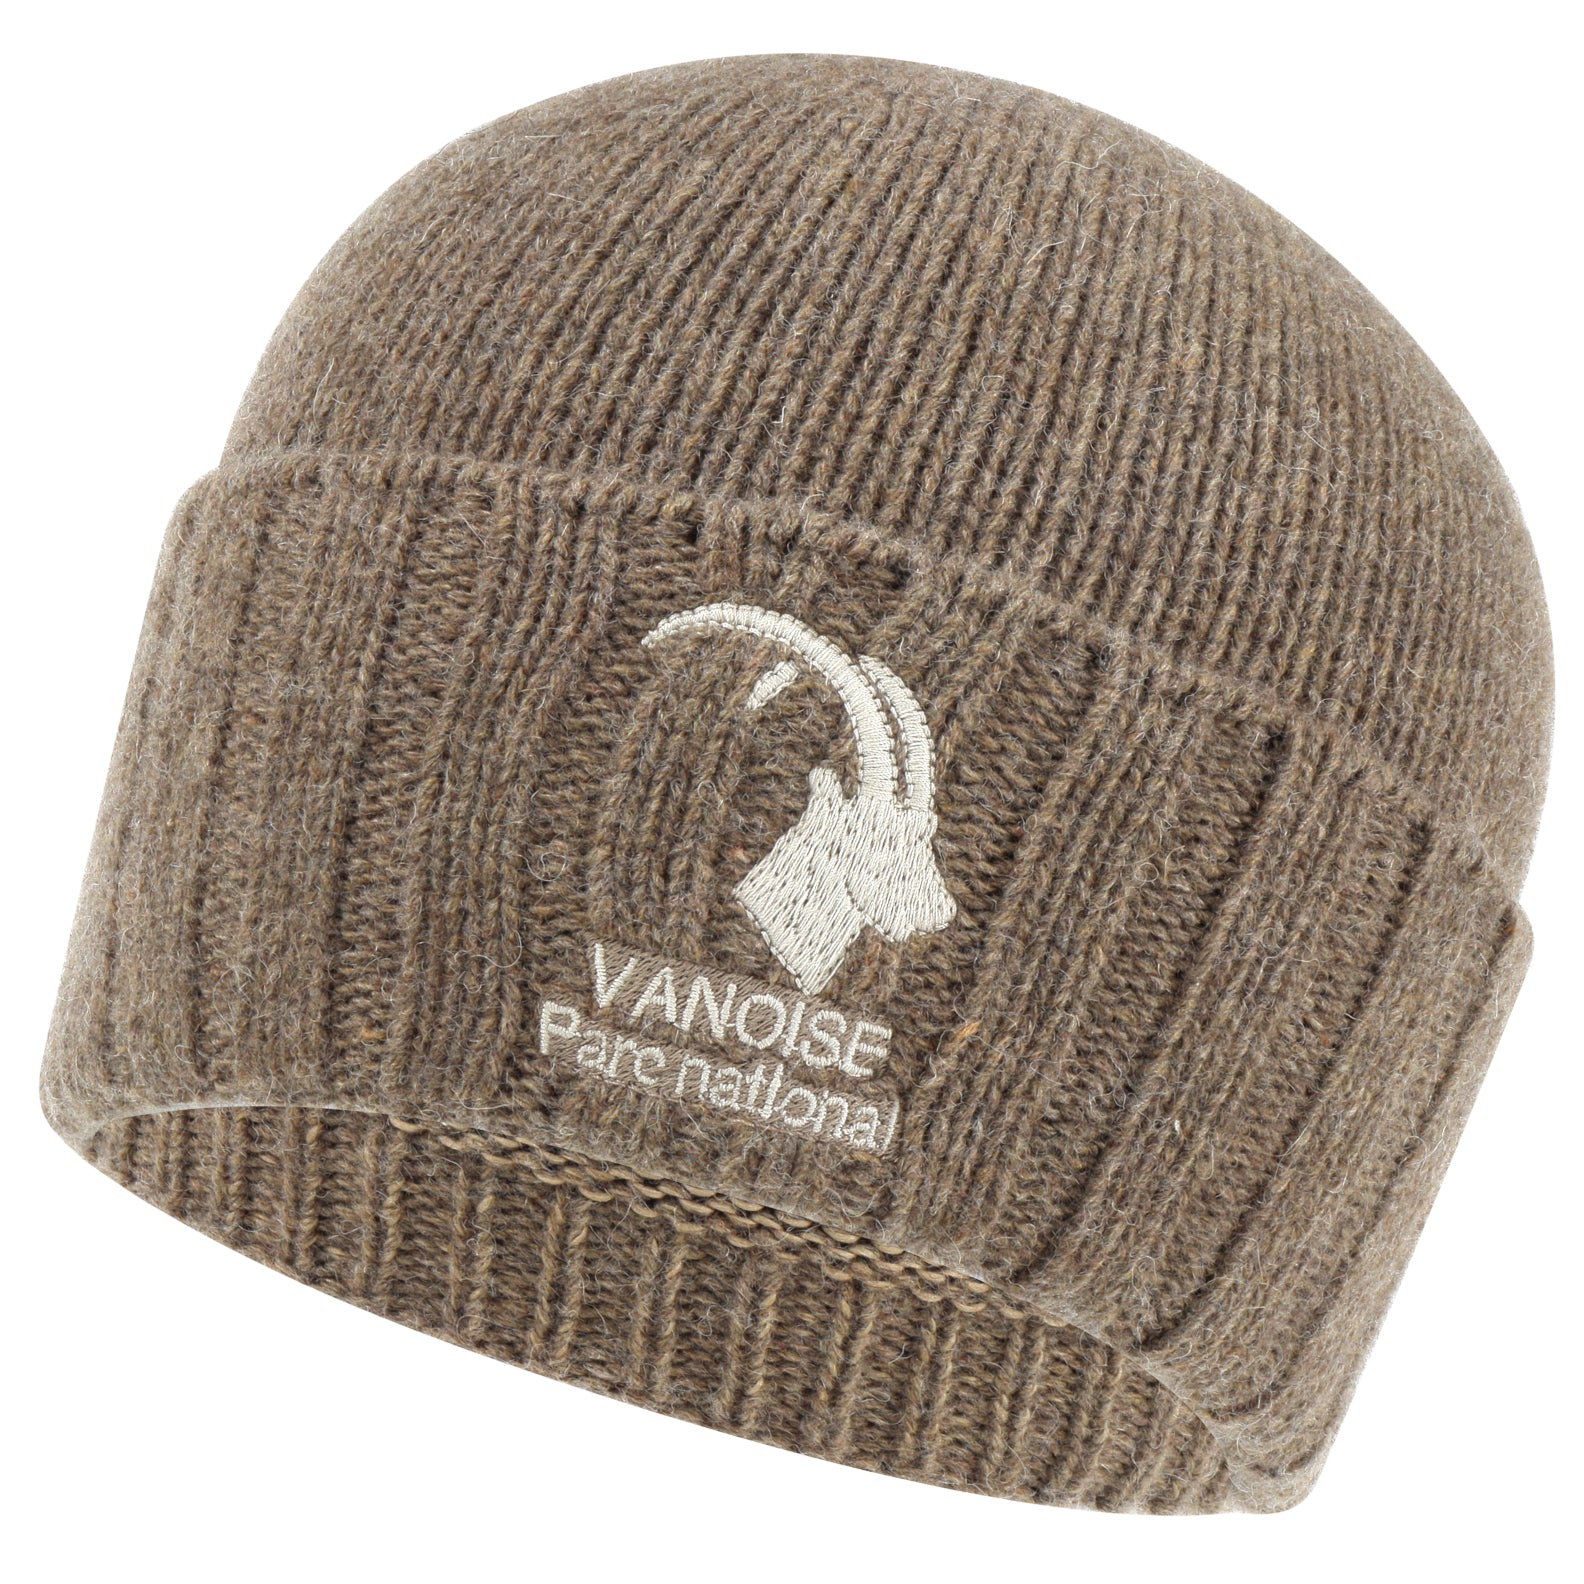 Bonnet laine gavroche - Missegle: Fabricant de bonnet en laine